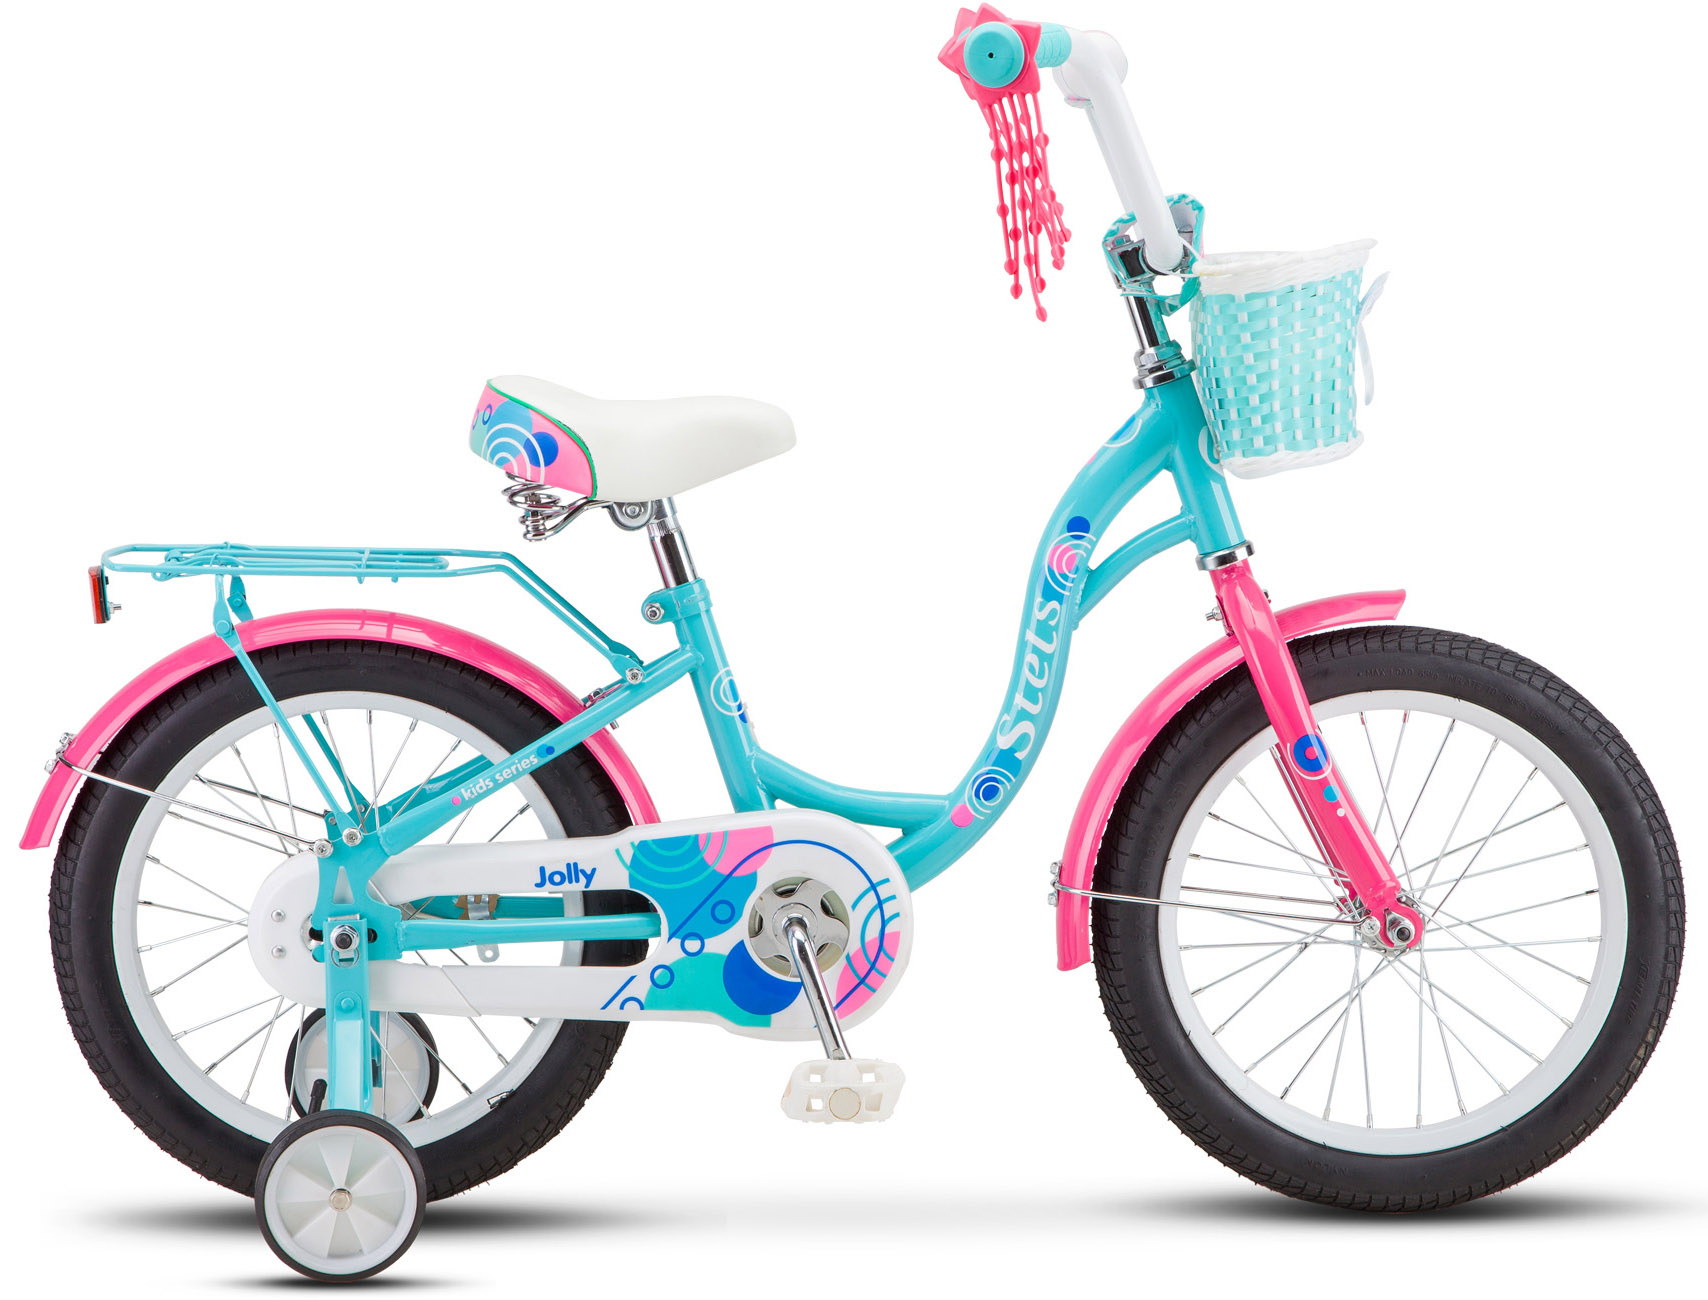  Отзывы о Детском велосипеде Stels Jolly 16 V010 2020